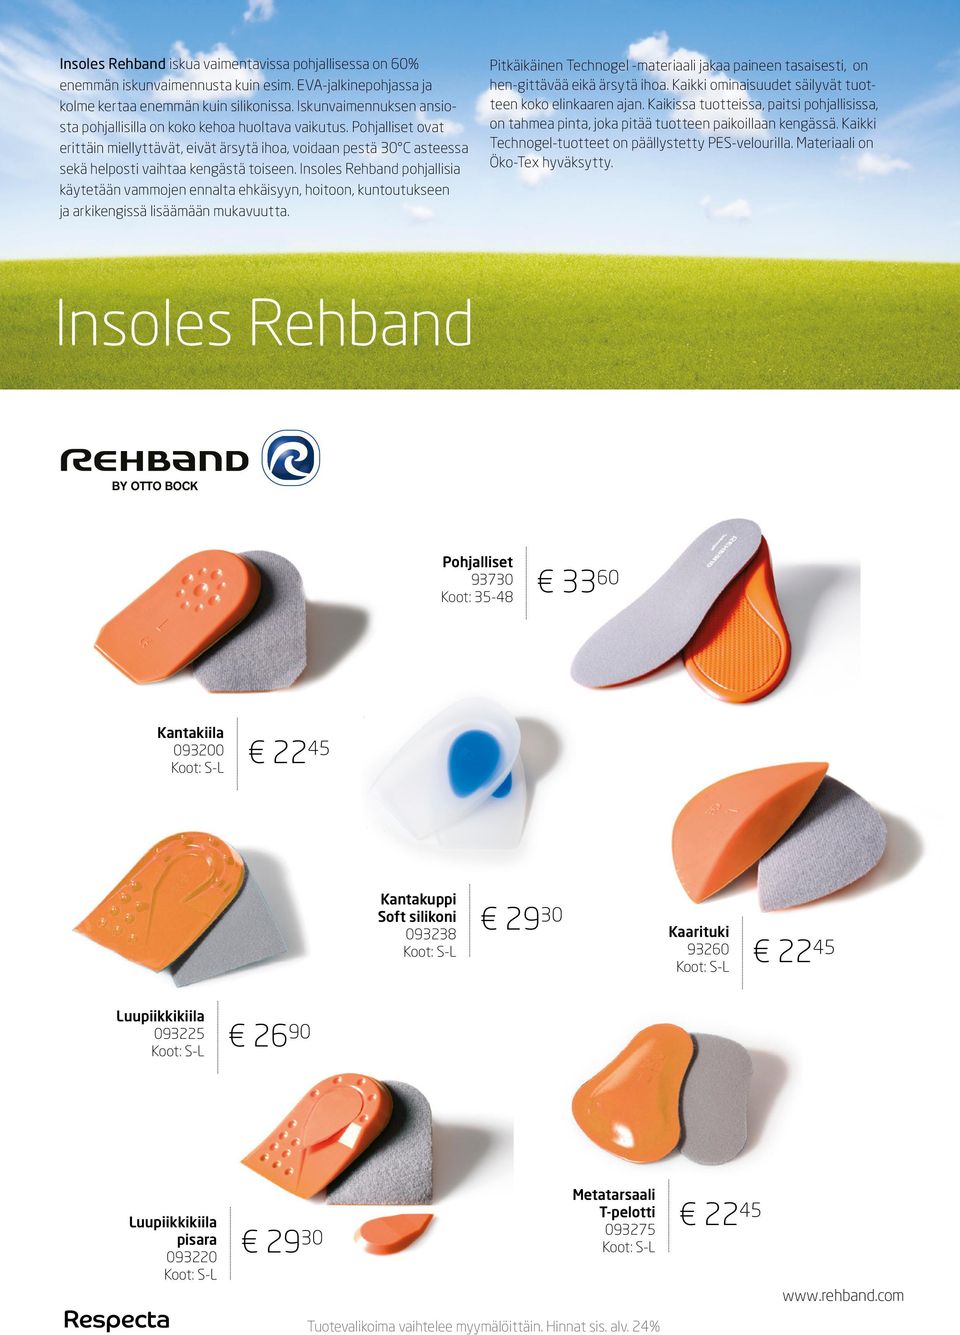 Insoles Rehband pohjallisia käytetään vammojen ennalta ehkäisyyn, hoitoon, kuntoutukseen ja arkikengissä lisäämään mukavuutta.